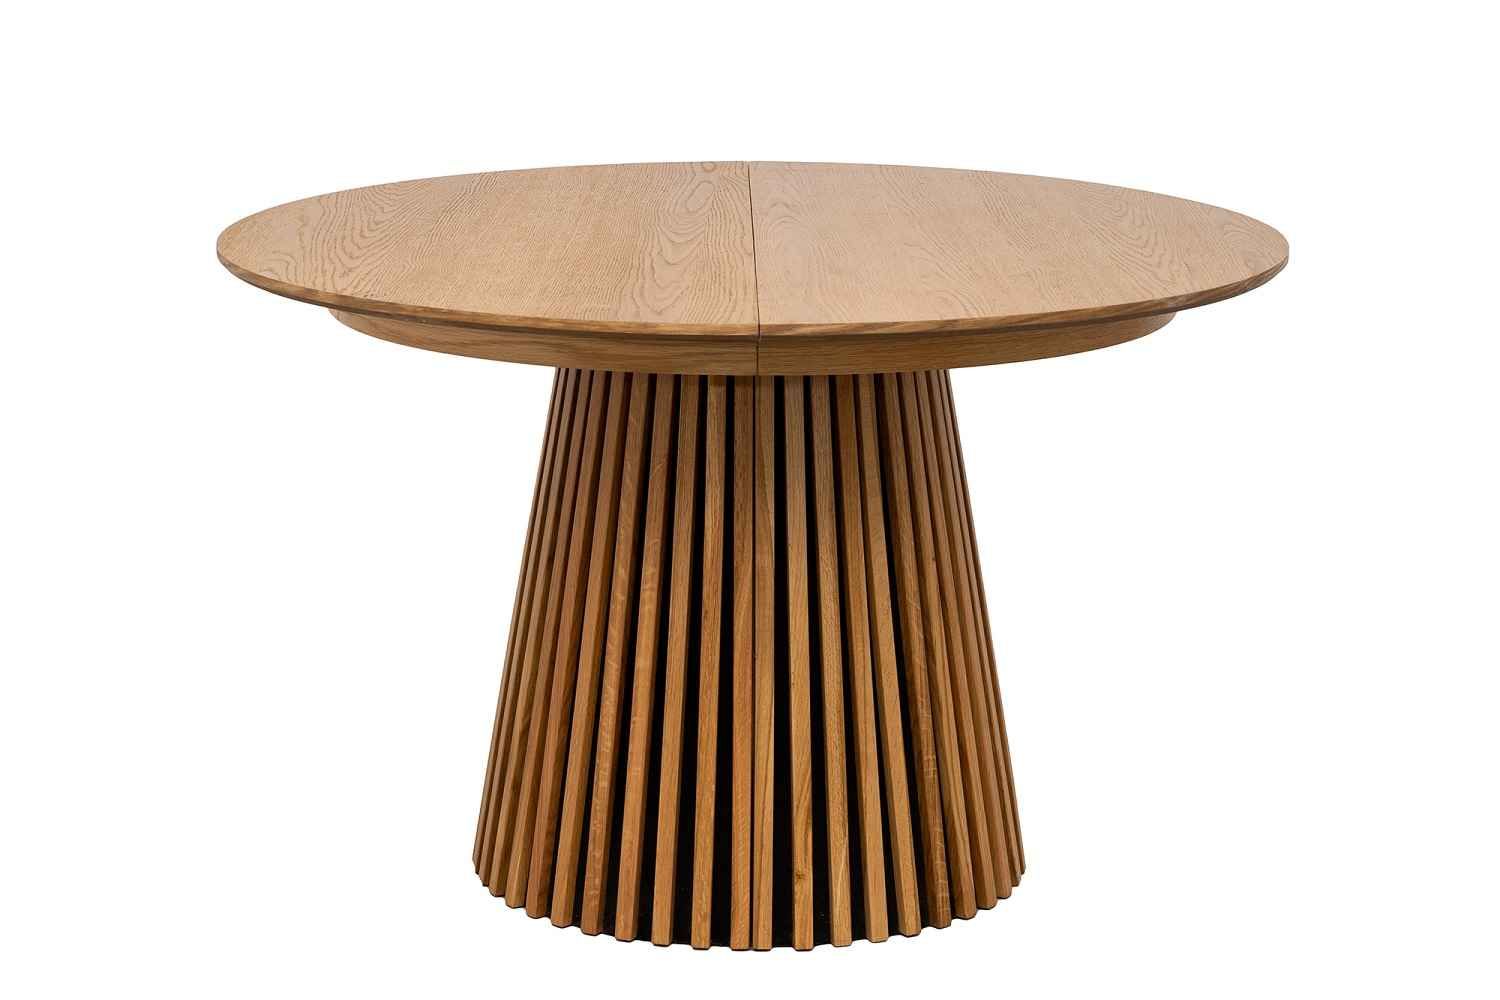 Rozťahovací jedálenský stôl Wadeline 120-160-200 cm prírodný dub